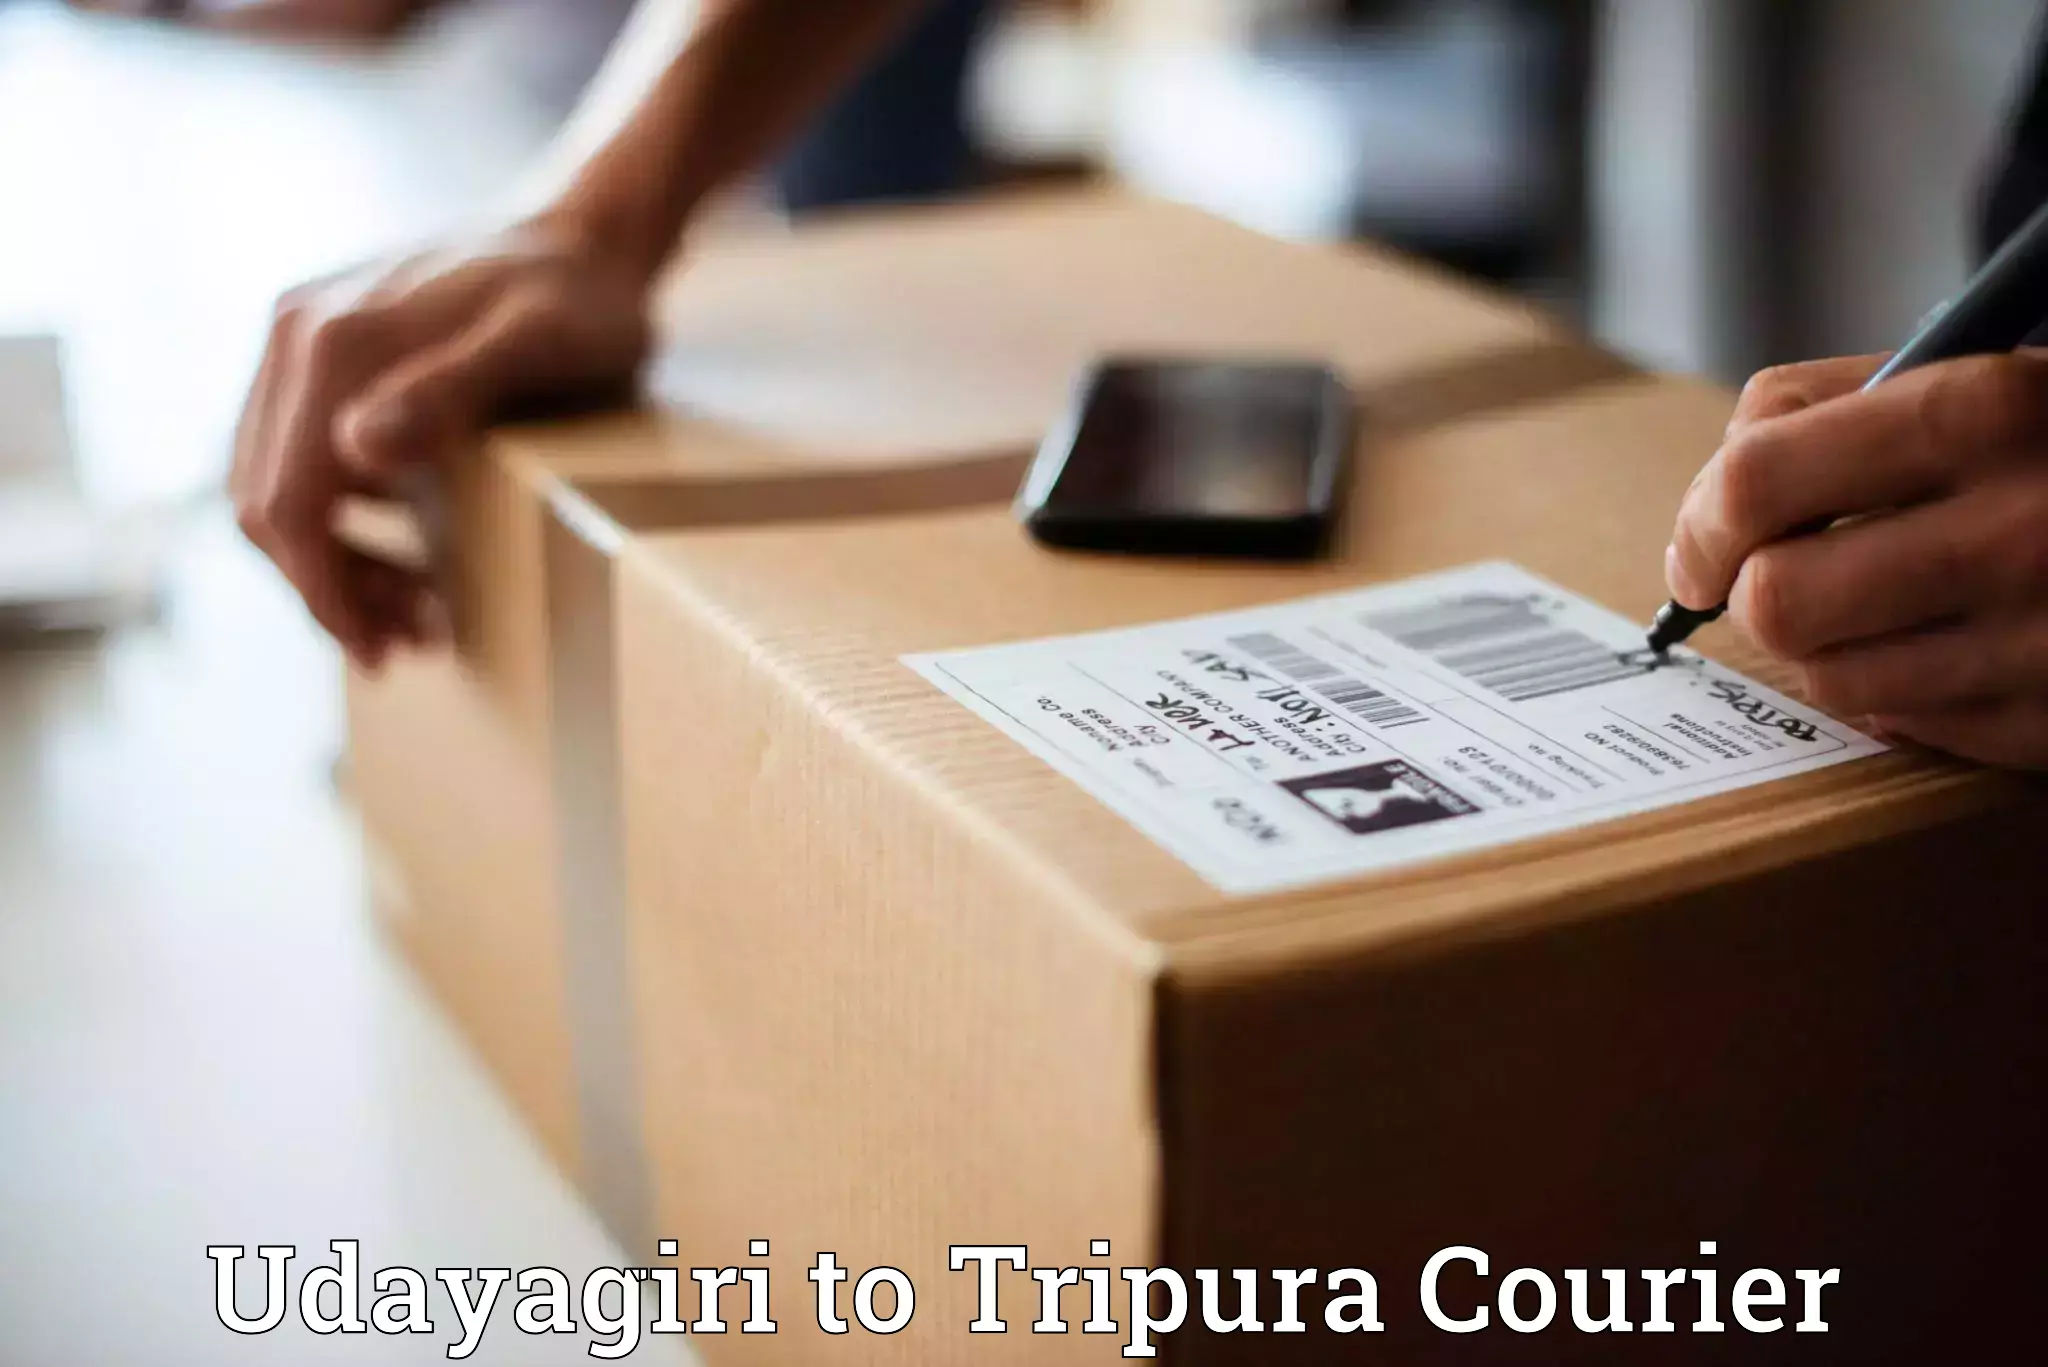 Personalized courier solutions Udayagiri to IIIT Agartala